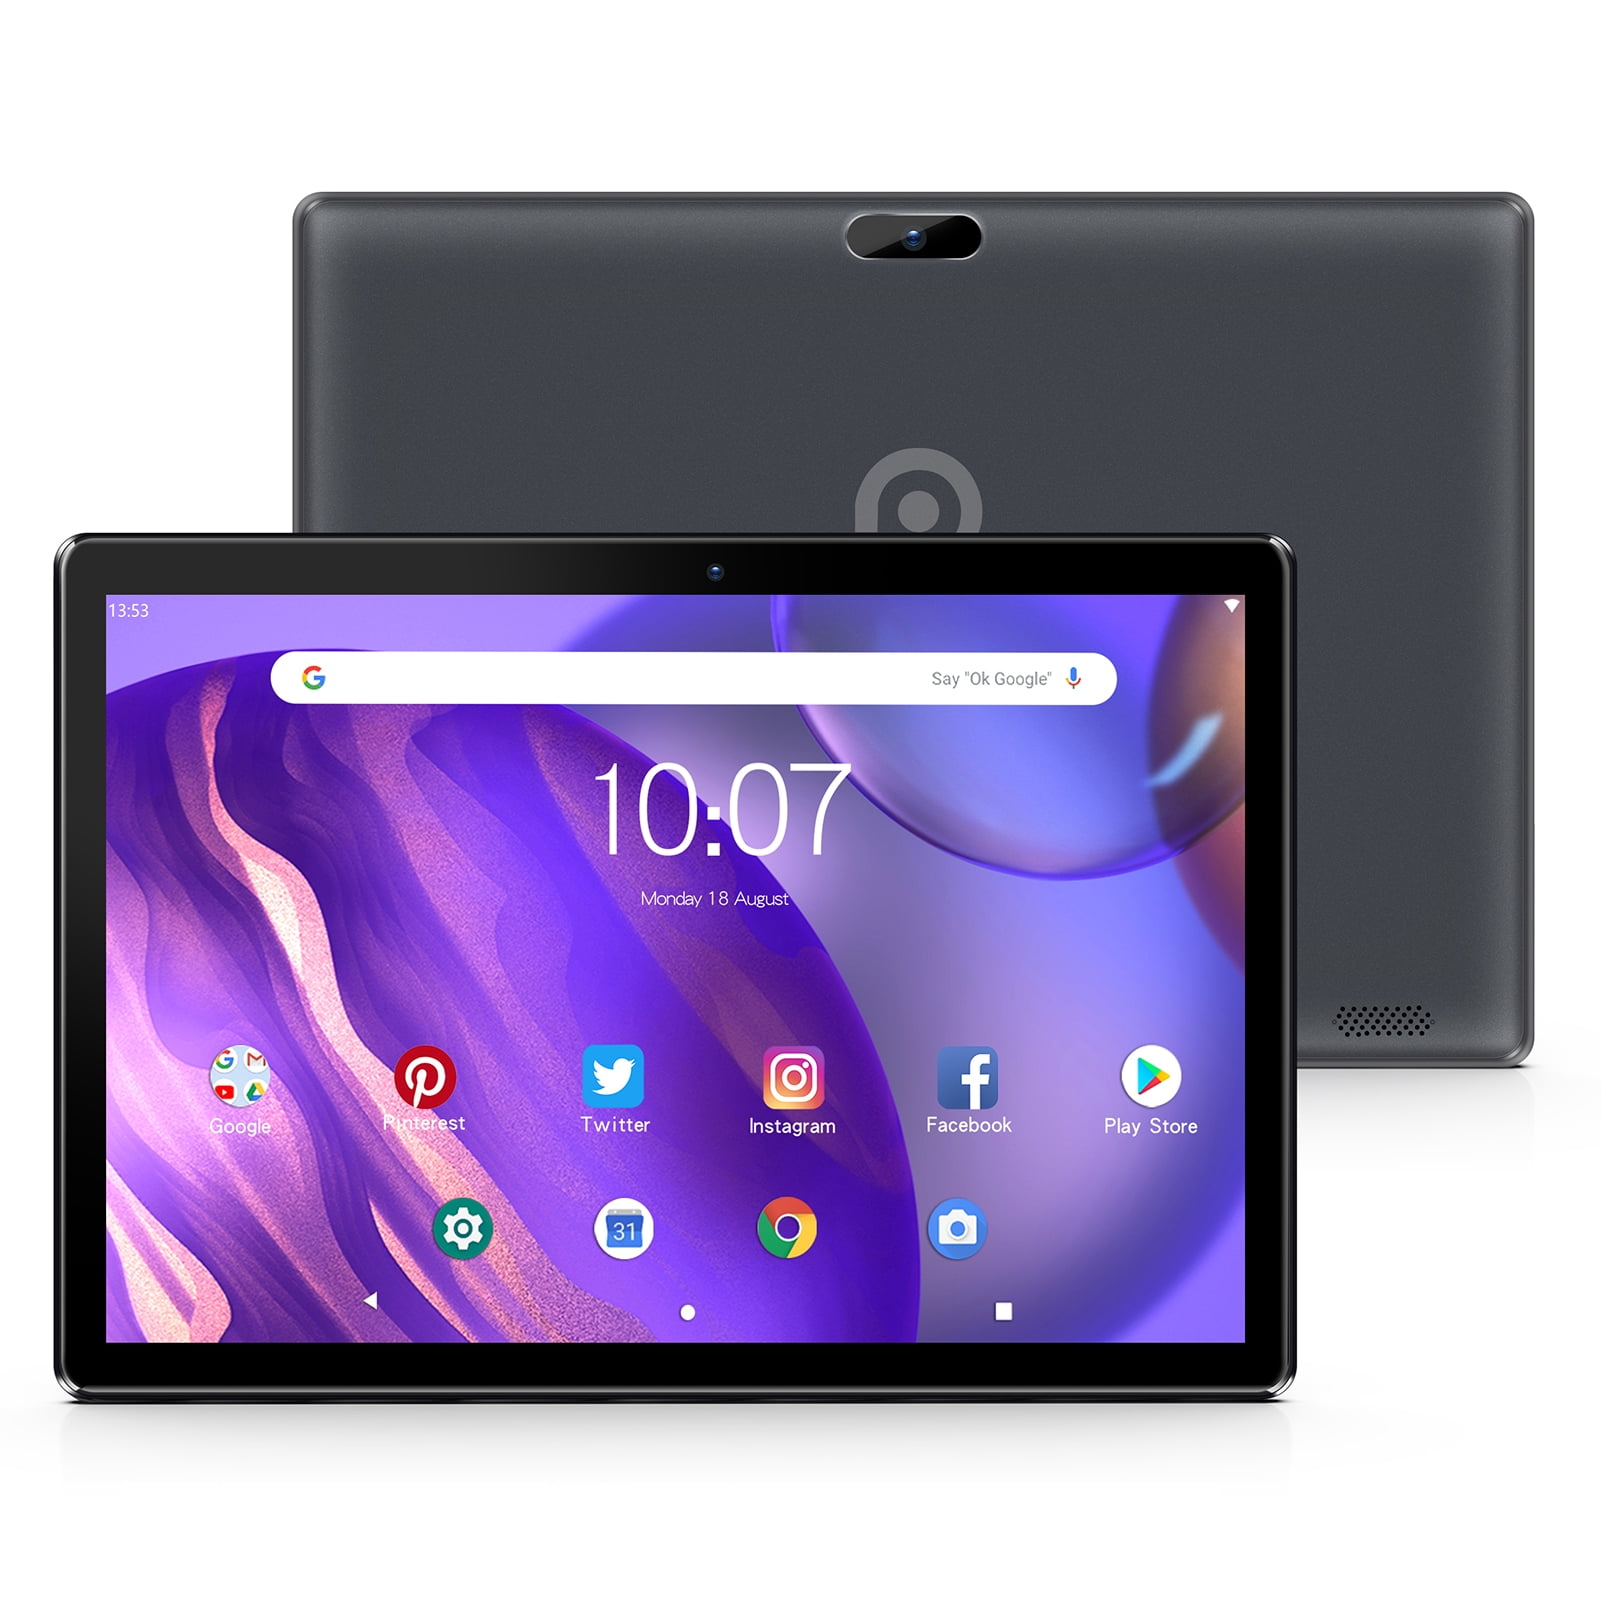 Tablet PC Écran HD IPS Wi-FI 32 Go de ROM Noir Bluetooth 8,0 MP Tablette Android Pritom Tablette Android 9.0 OS OS 10 Pouces Processeur Quad Core Caméra arrière Avant 2 Go de RAM 